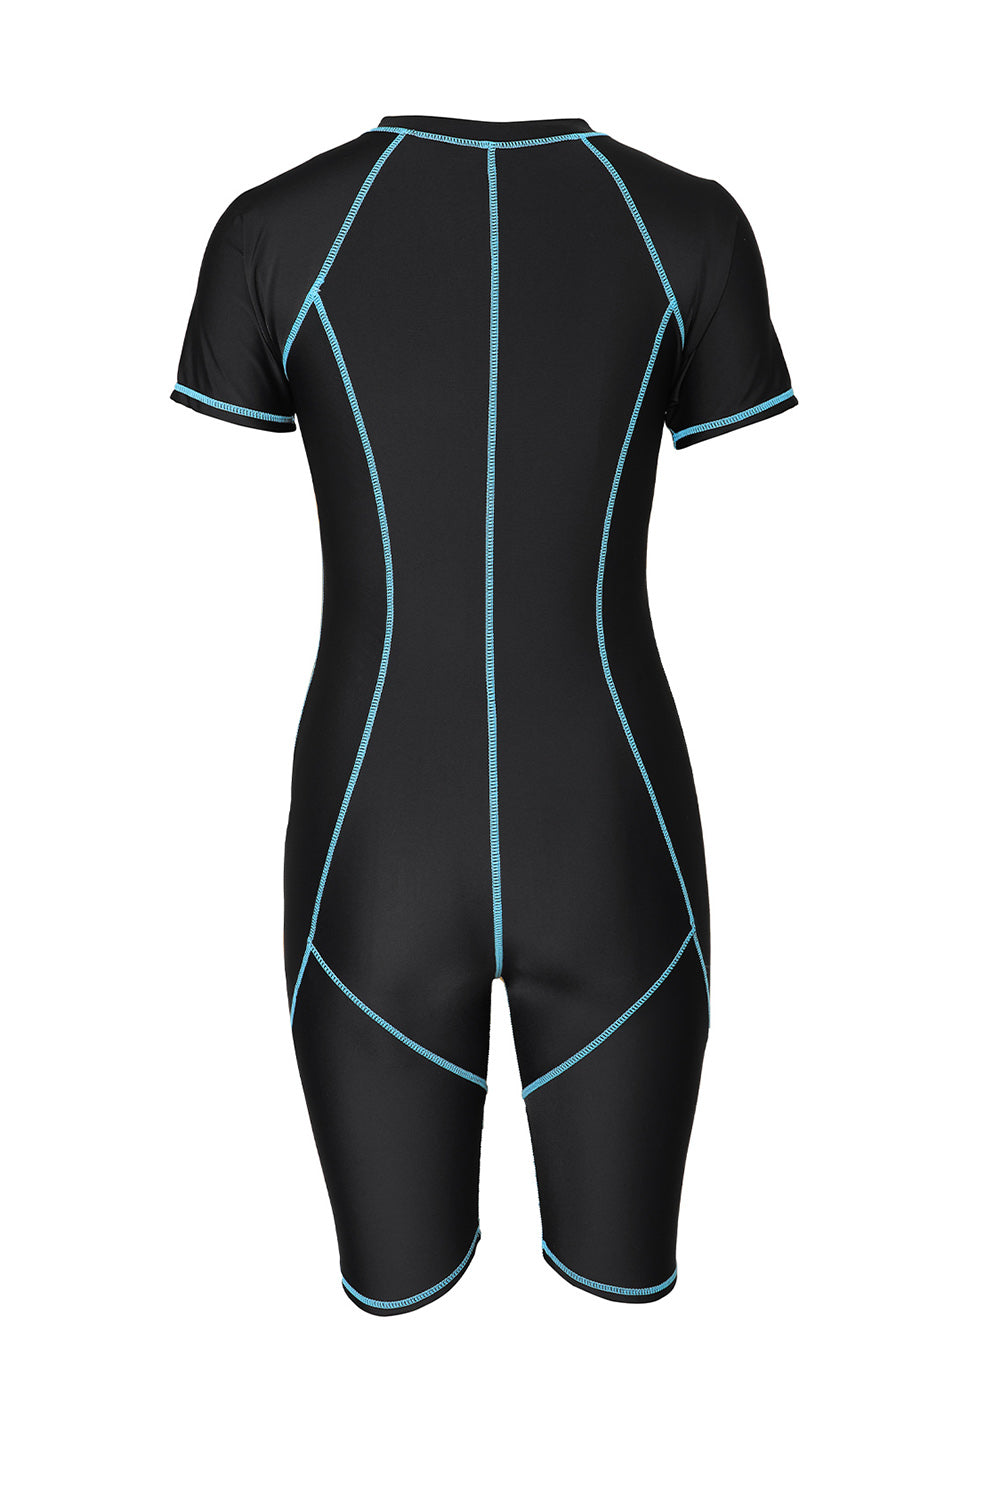 Sky Blue Seam Contoured Zip Front Wetsuit Rash Guards JT's Designer Fashion